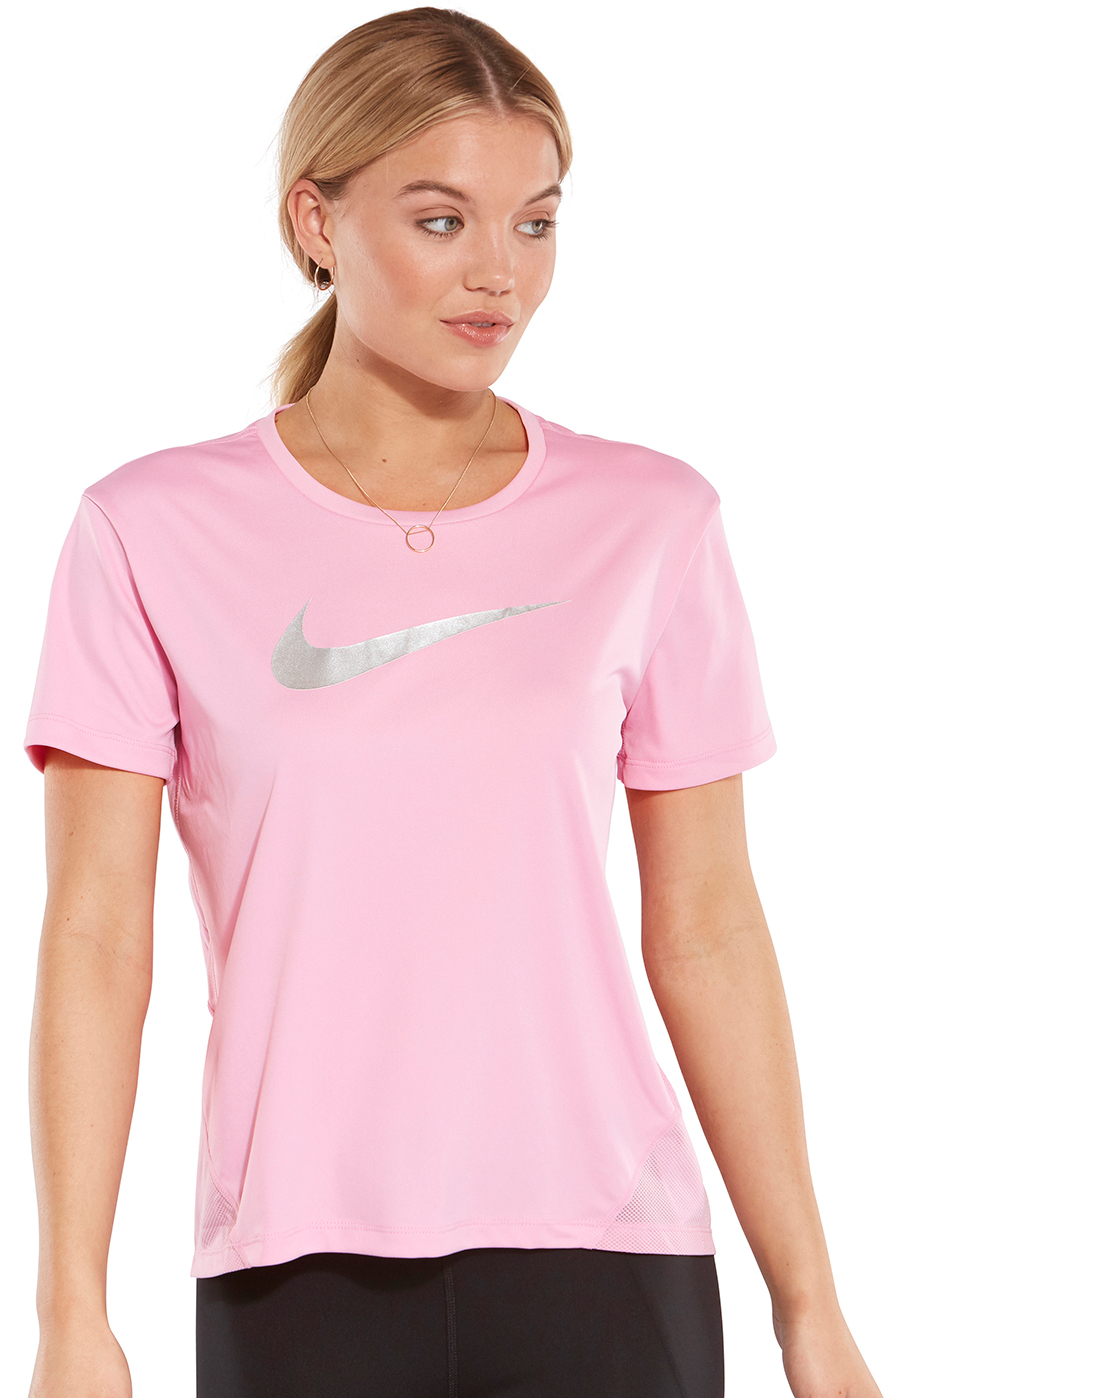 pink nike t shirt women's